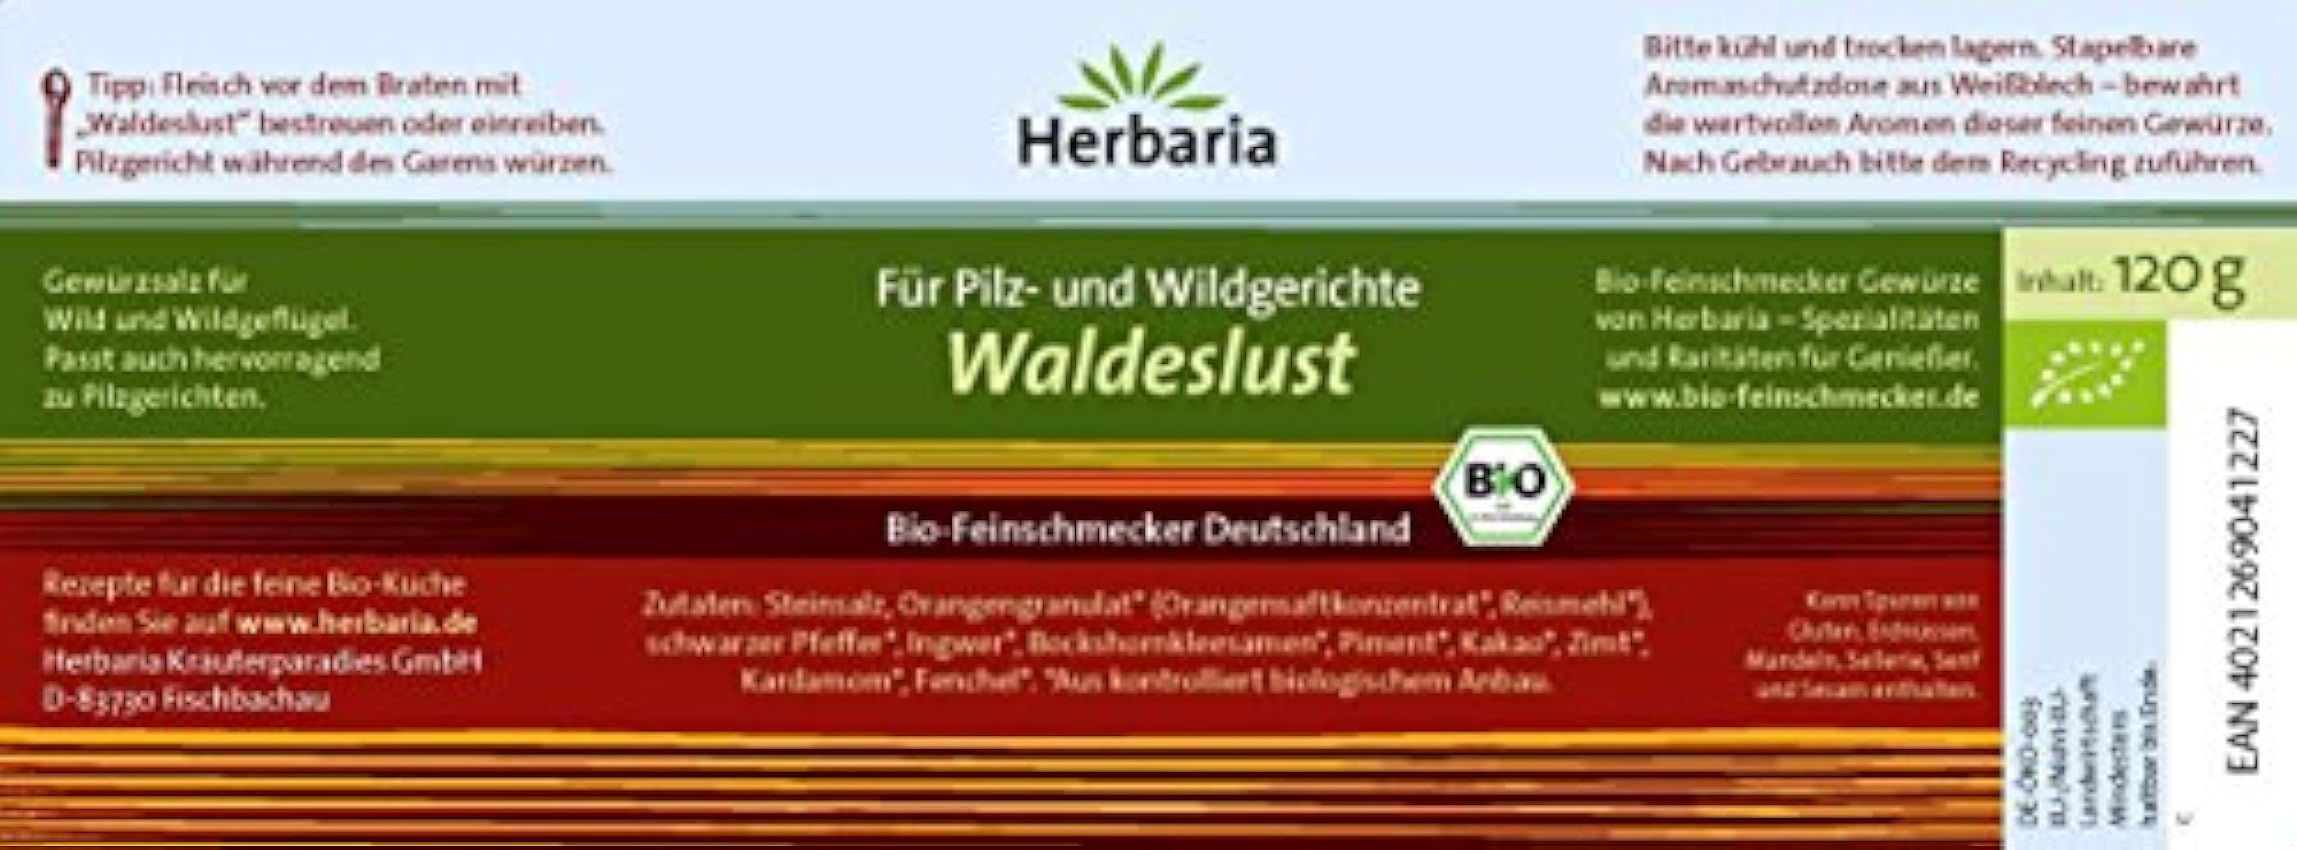 Herbaria Waldeslust, Wildgewürz lAvvKVwo